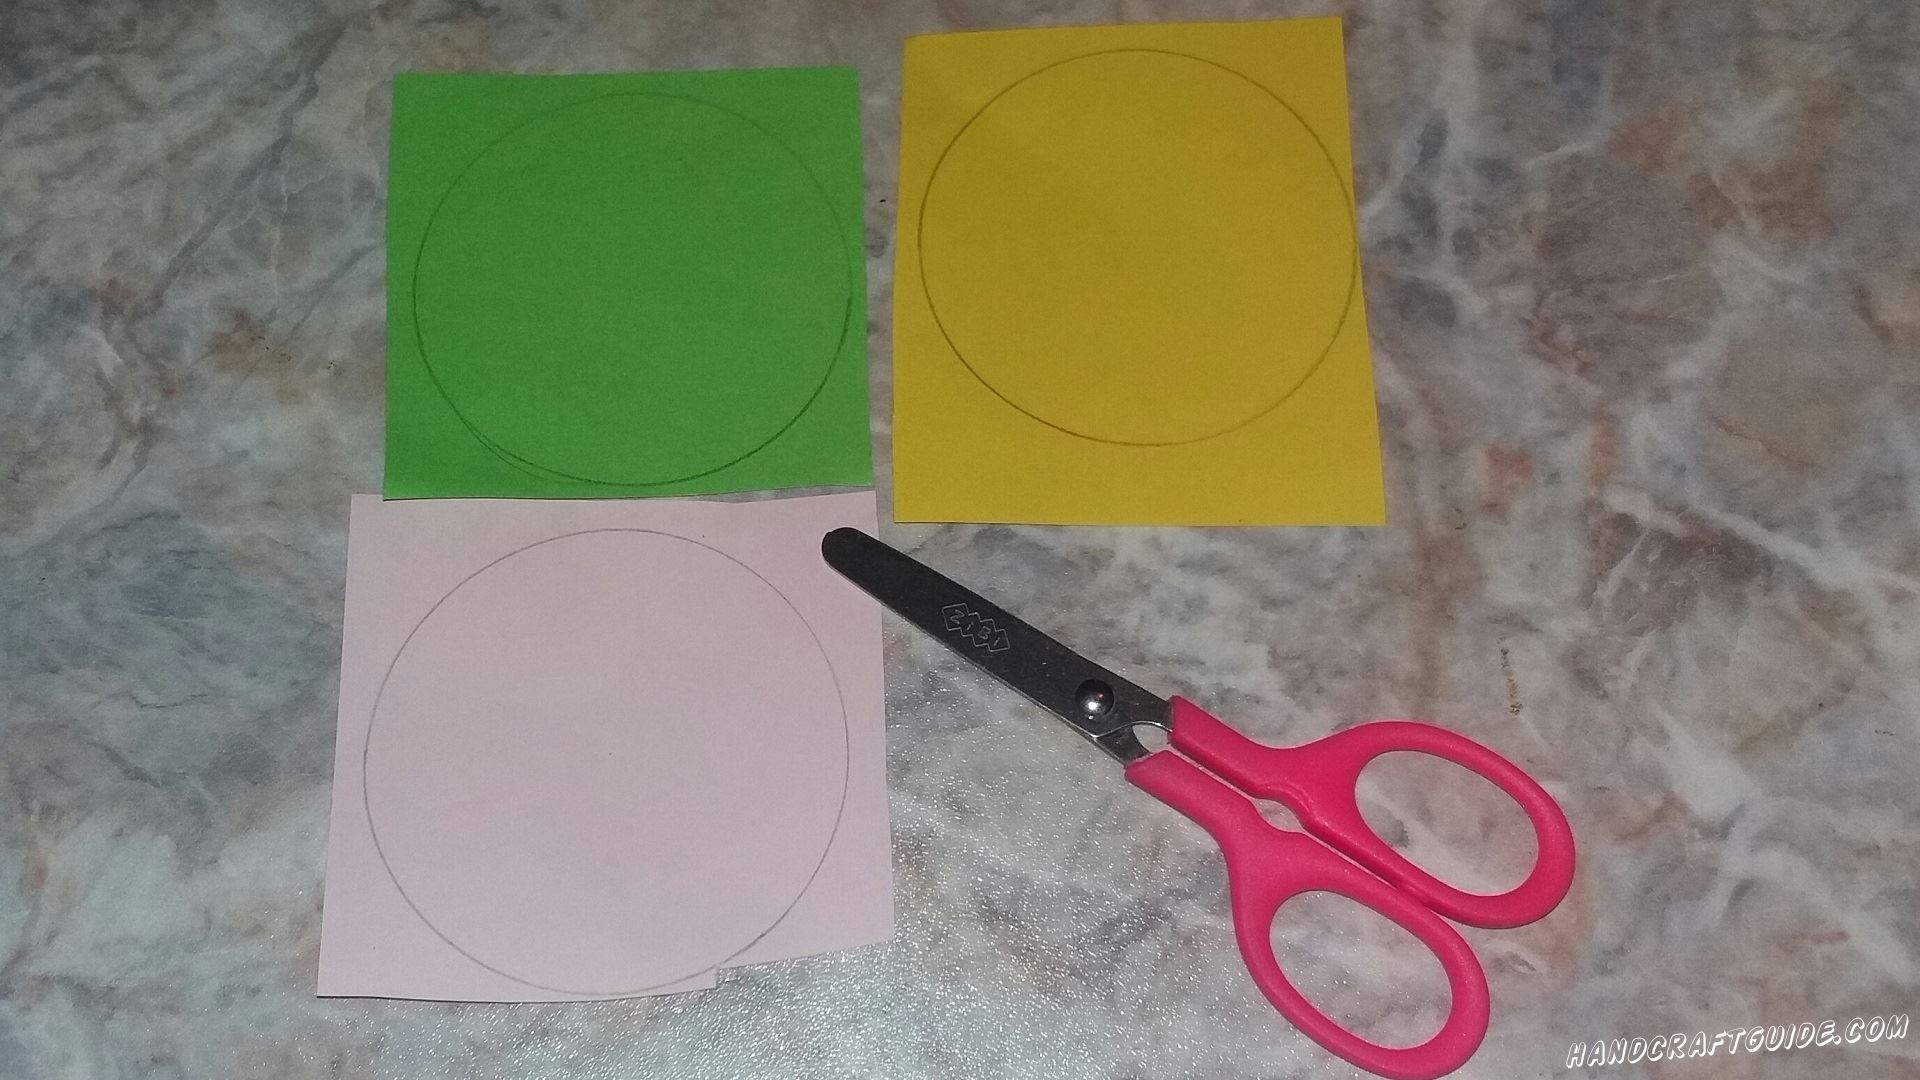 Для начала возьмем розовый, желтый и зеленый листы бумаги и нарисуем на них круги одинакового размера